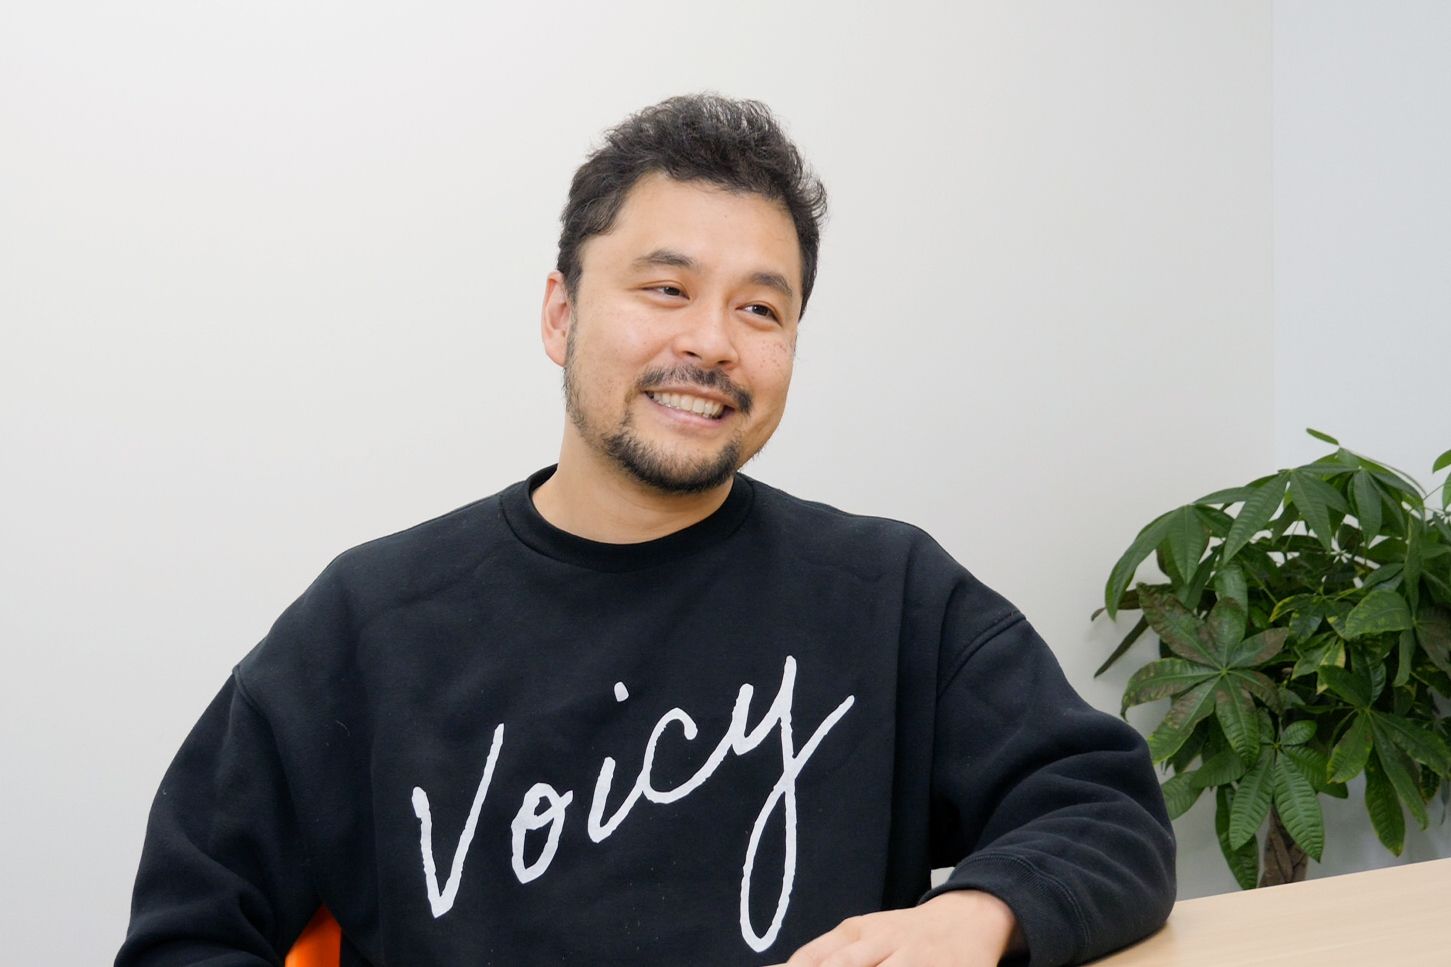 「沖縄は日本の宝。音声で魅力を全国に届けたい」　音声プラットフォームのVoicy（ボイシー）の緒方代表が語る地方の可能性